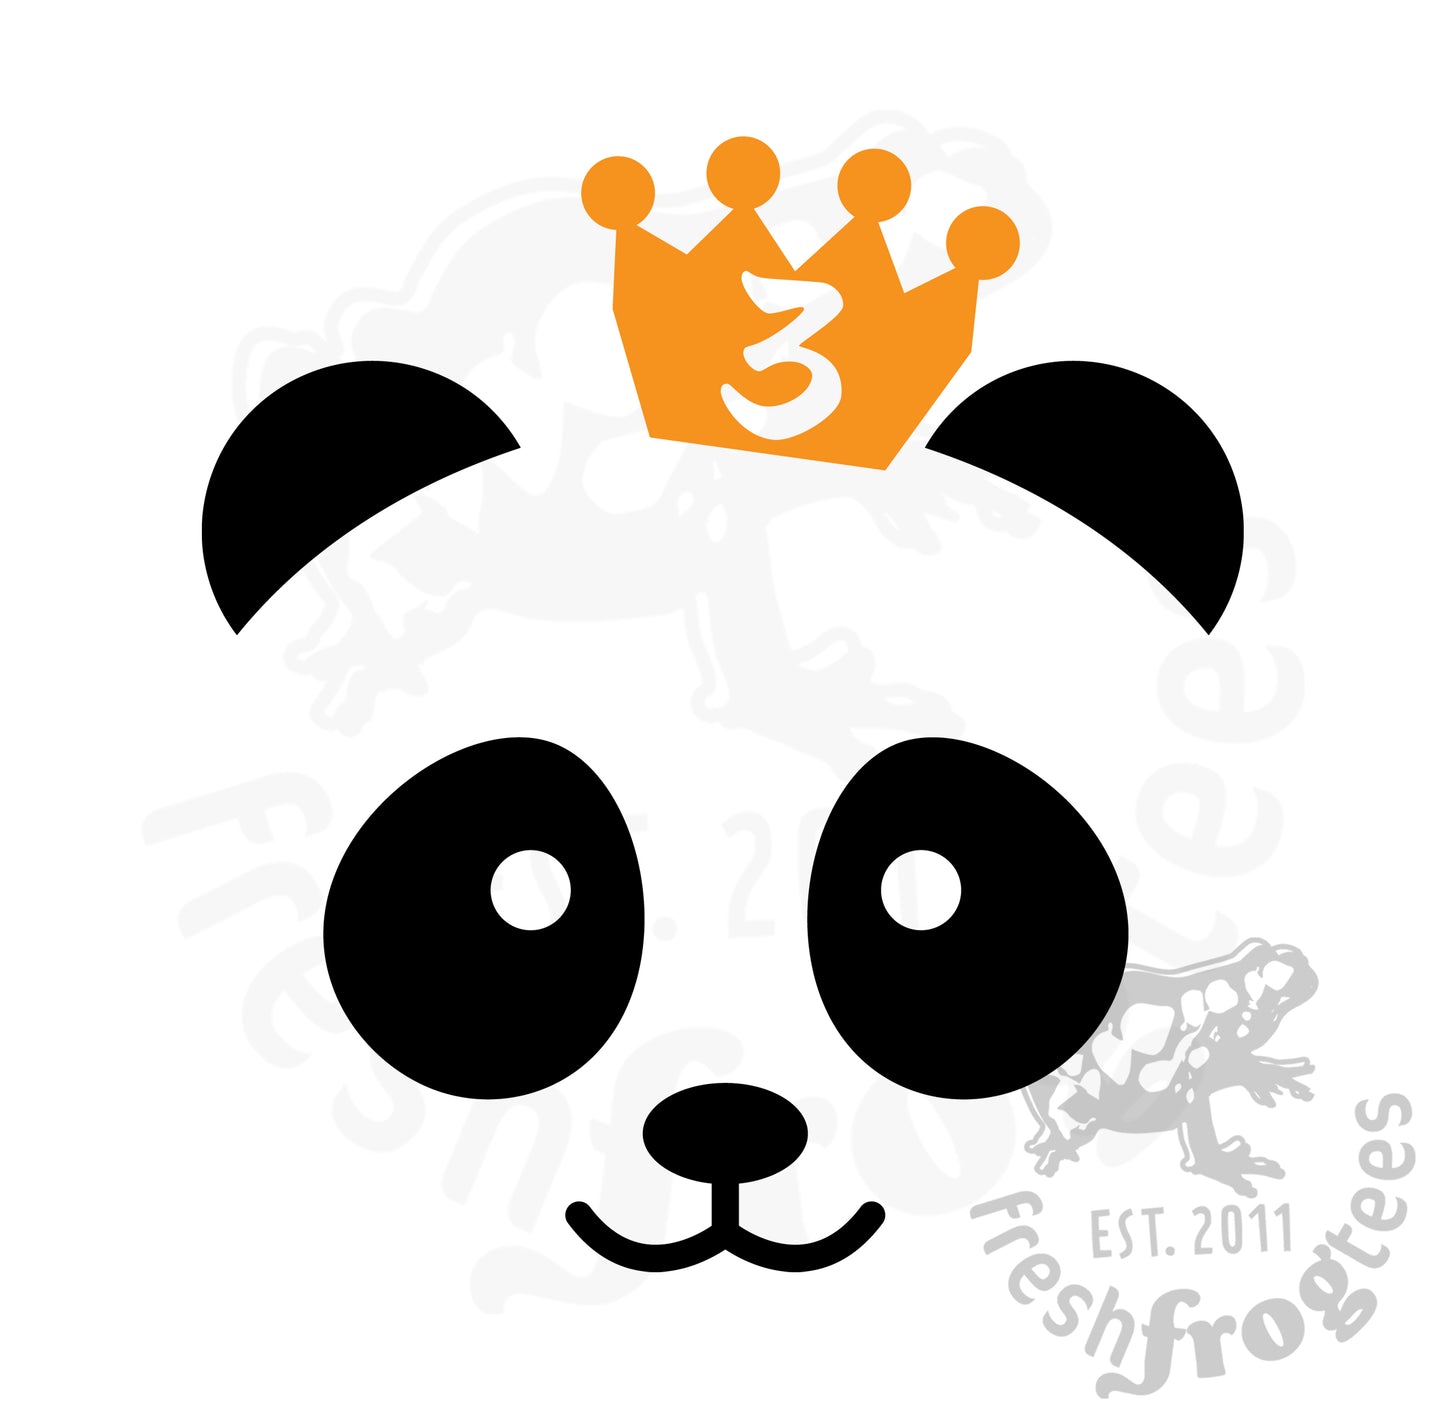 3rd birthday panda SVG vector illustration Third